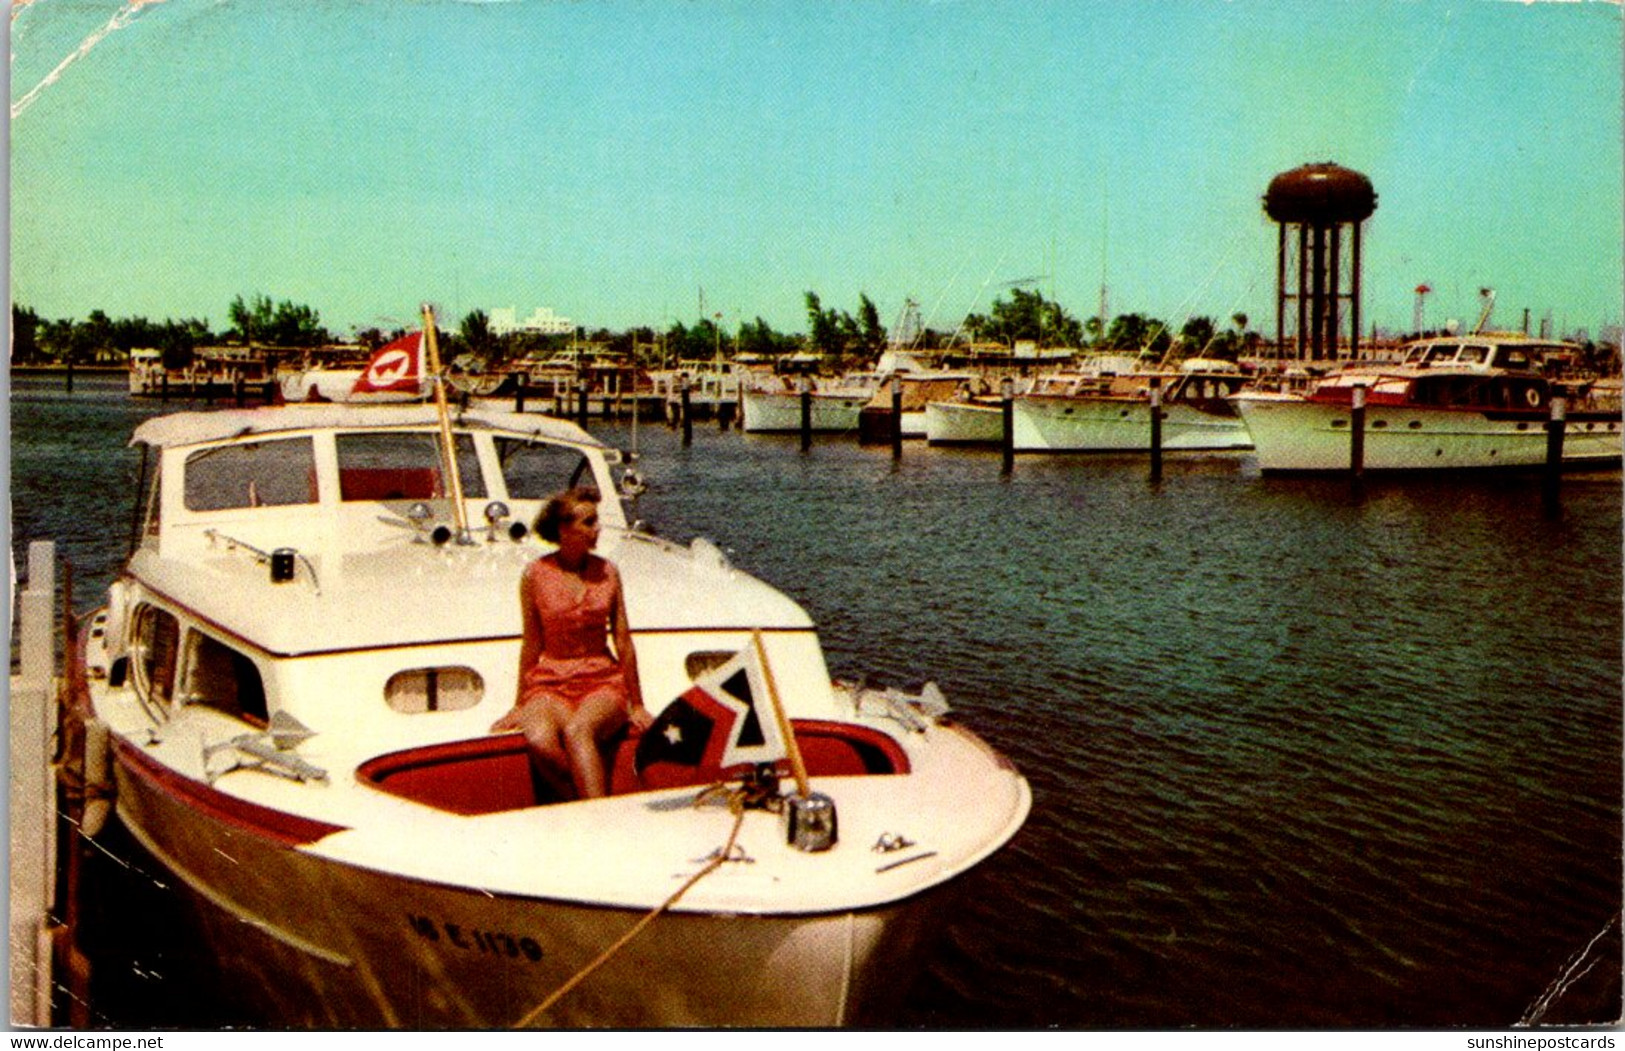 Florida Fort Lauderdale Bahia Mar Yacht Basin 1963 - Fort Lauderdale